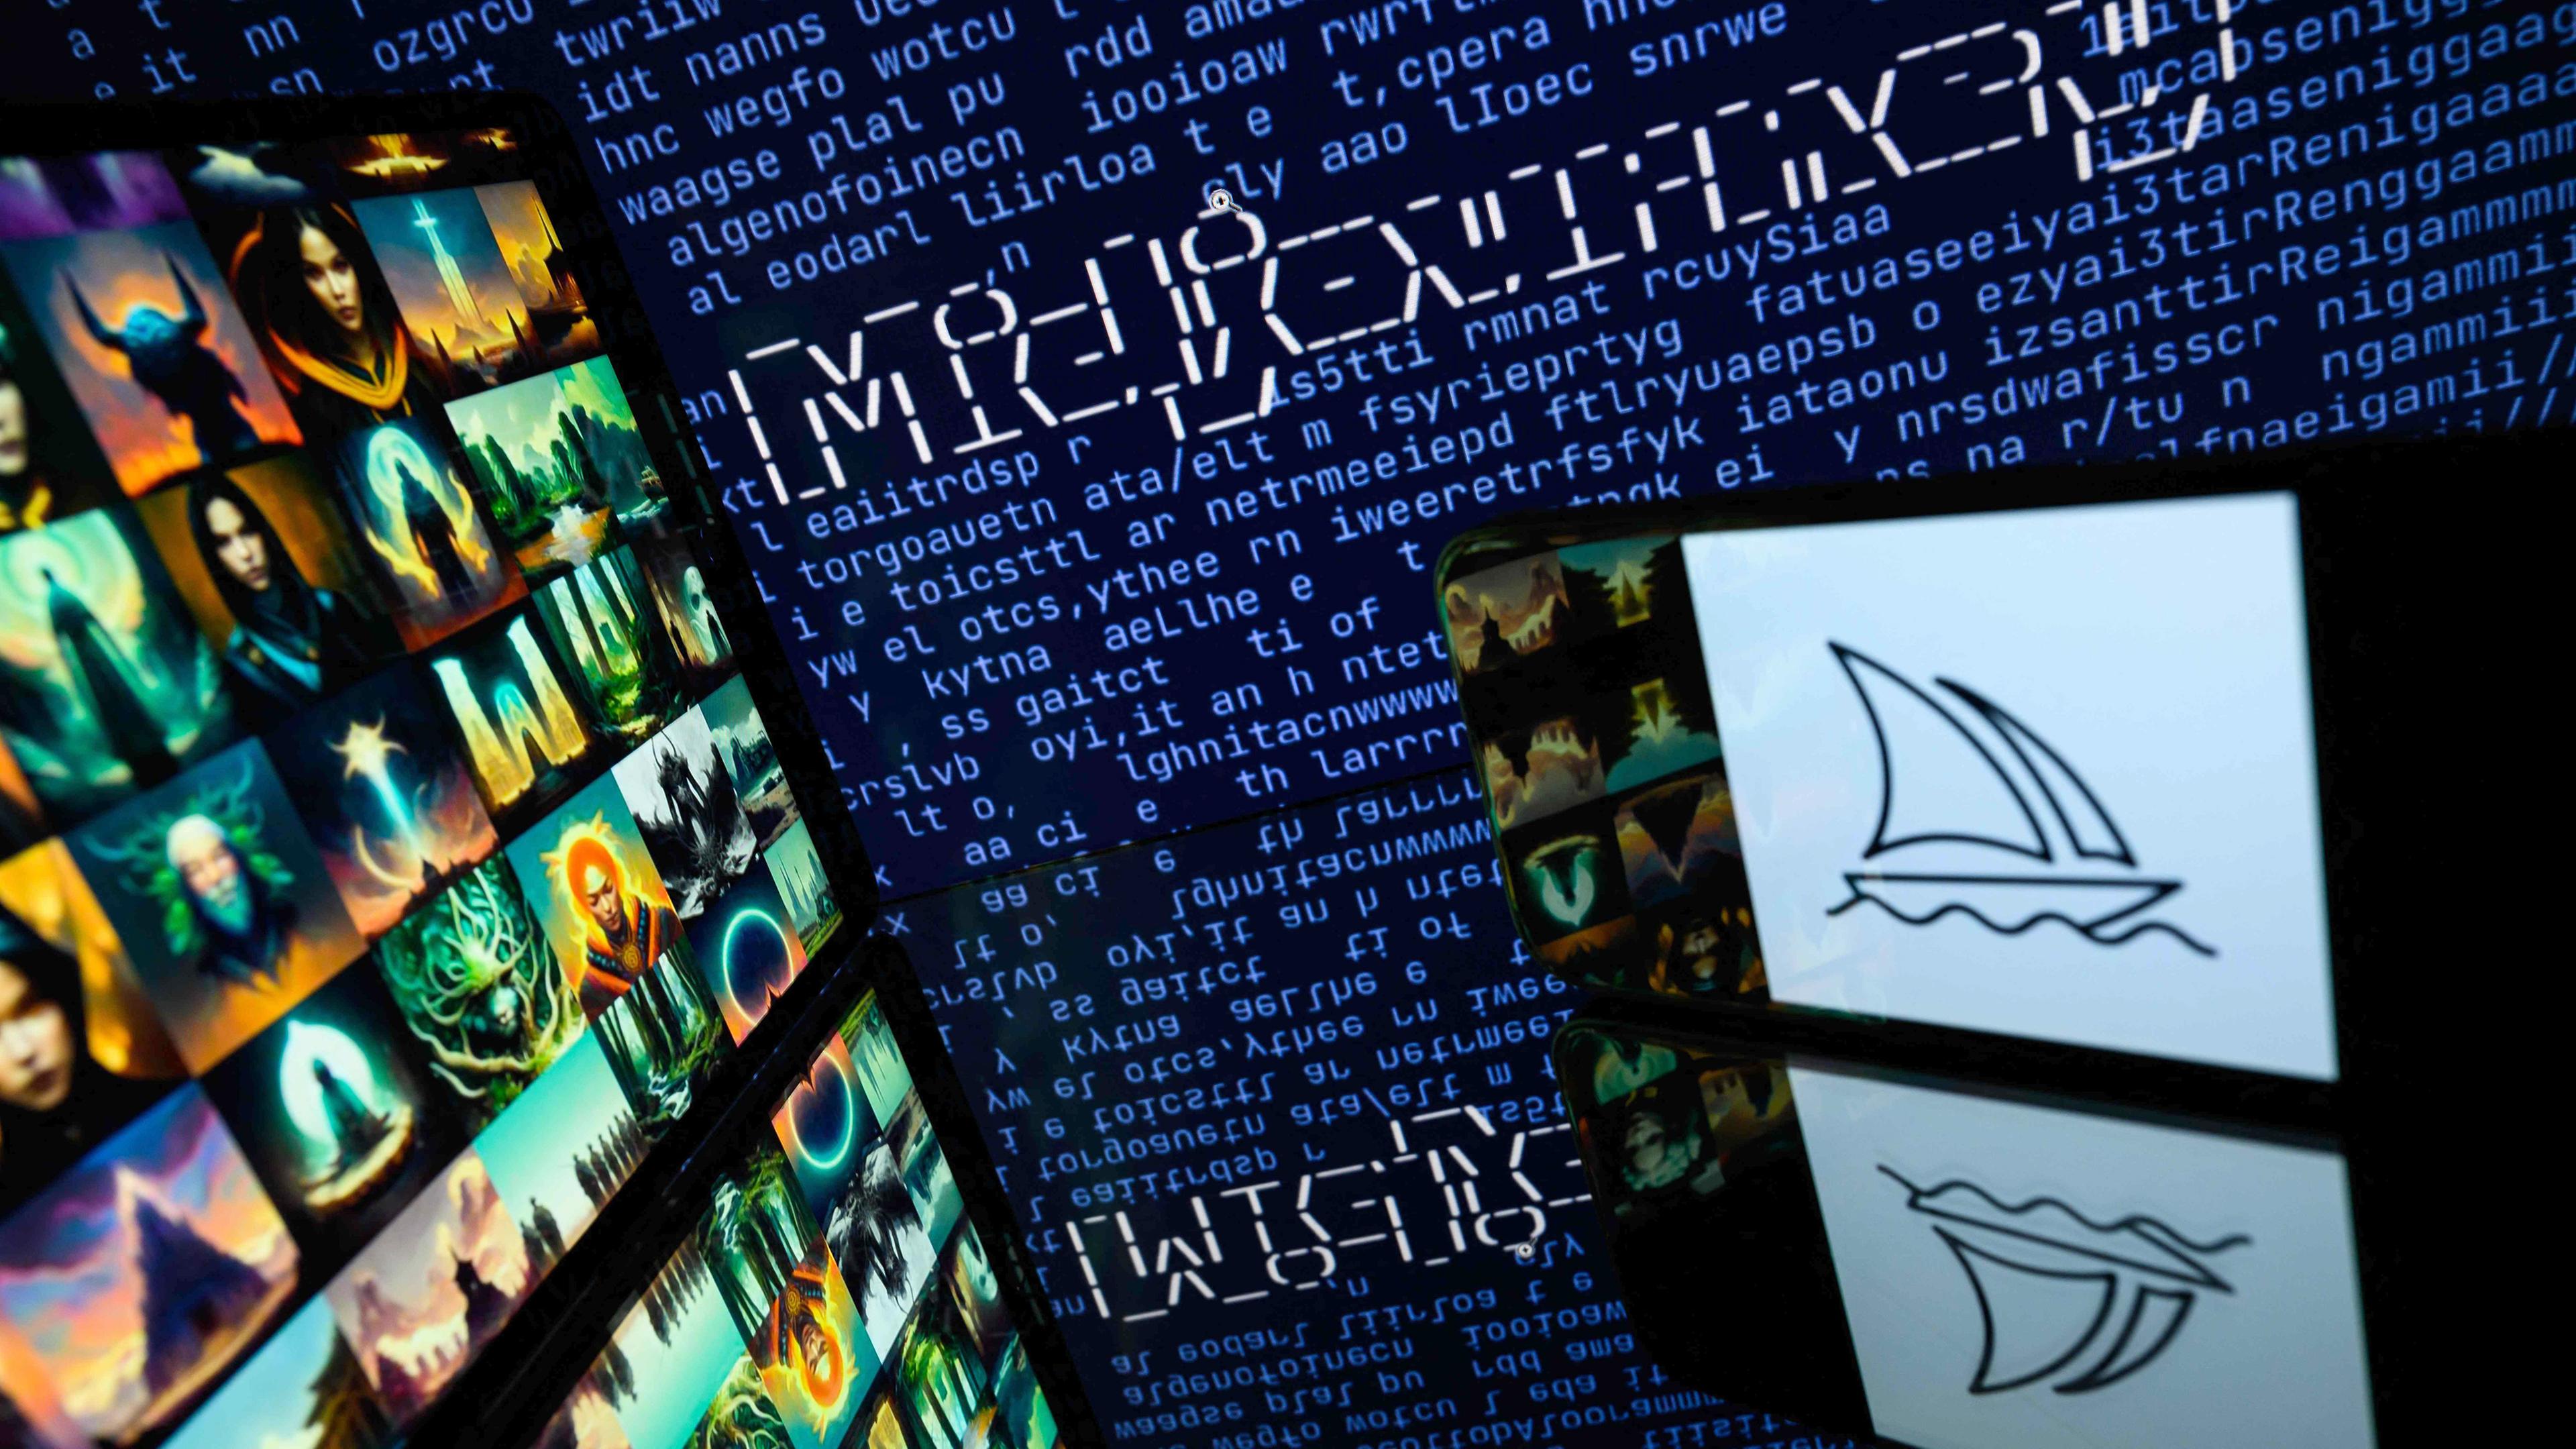 Bildschirme mit dem Logo von Midjourney, einer Anwendung für künstliche Intelligenz, aufgenommen am 26.04.2023 Toulouse